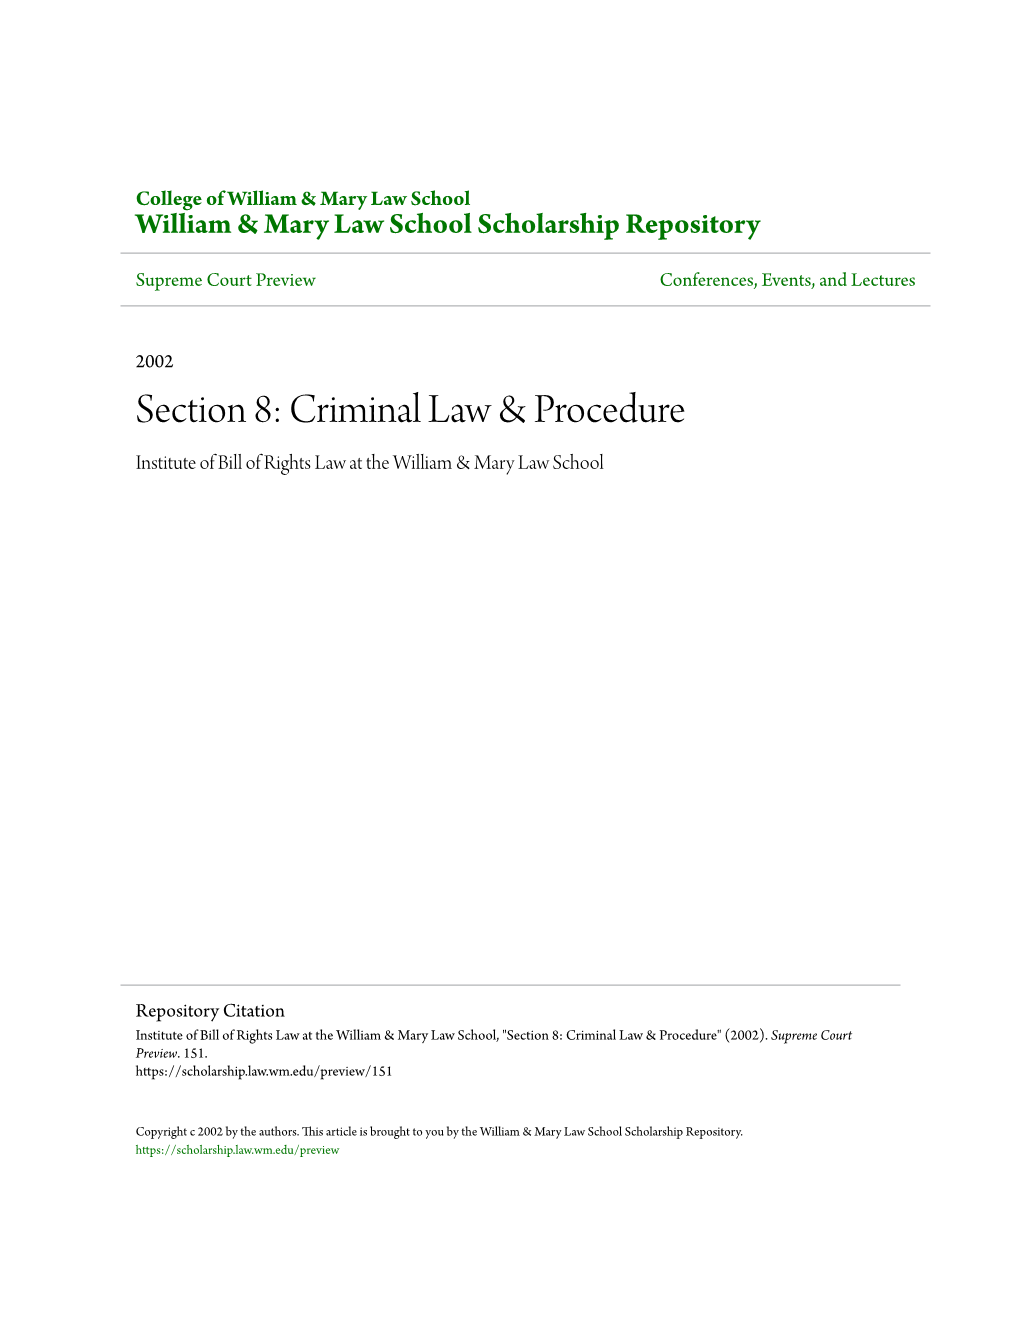 Section 8: Criminal Law & Procedure